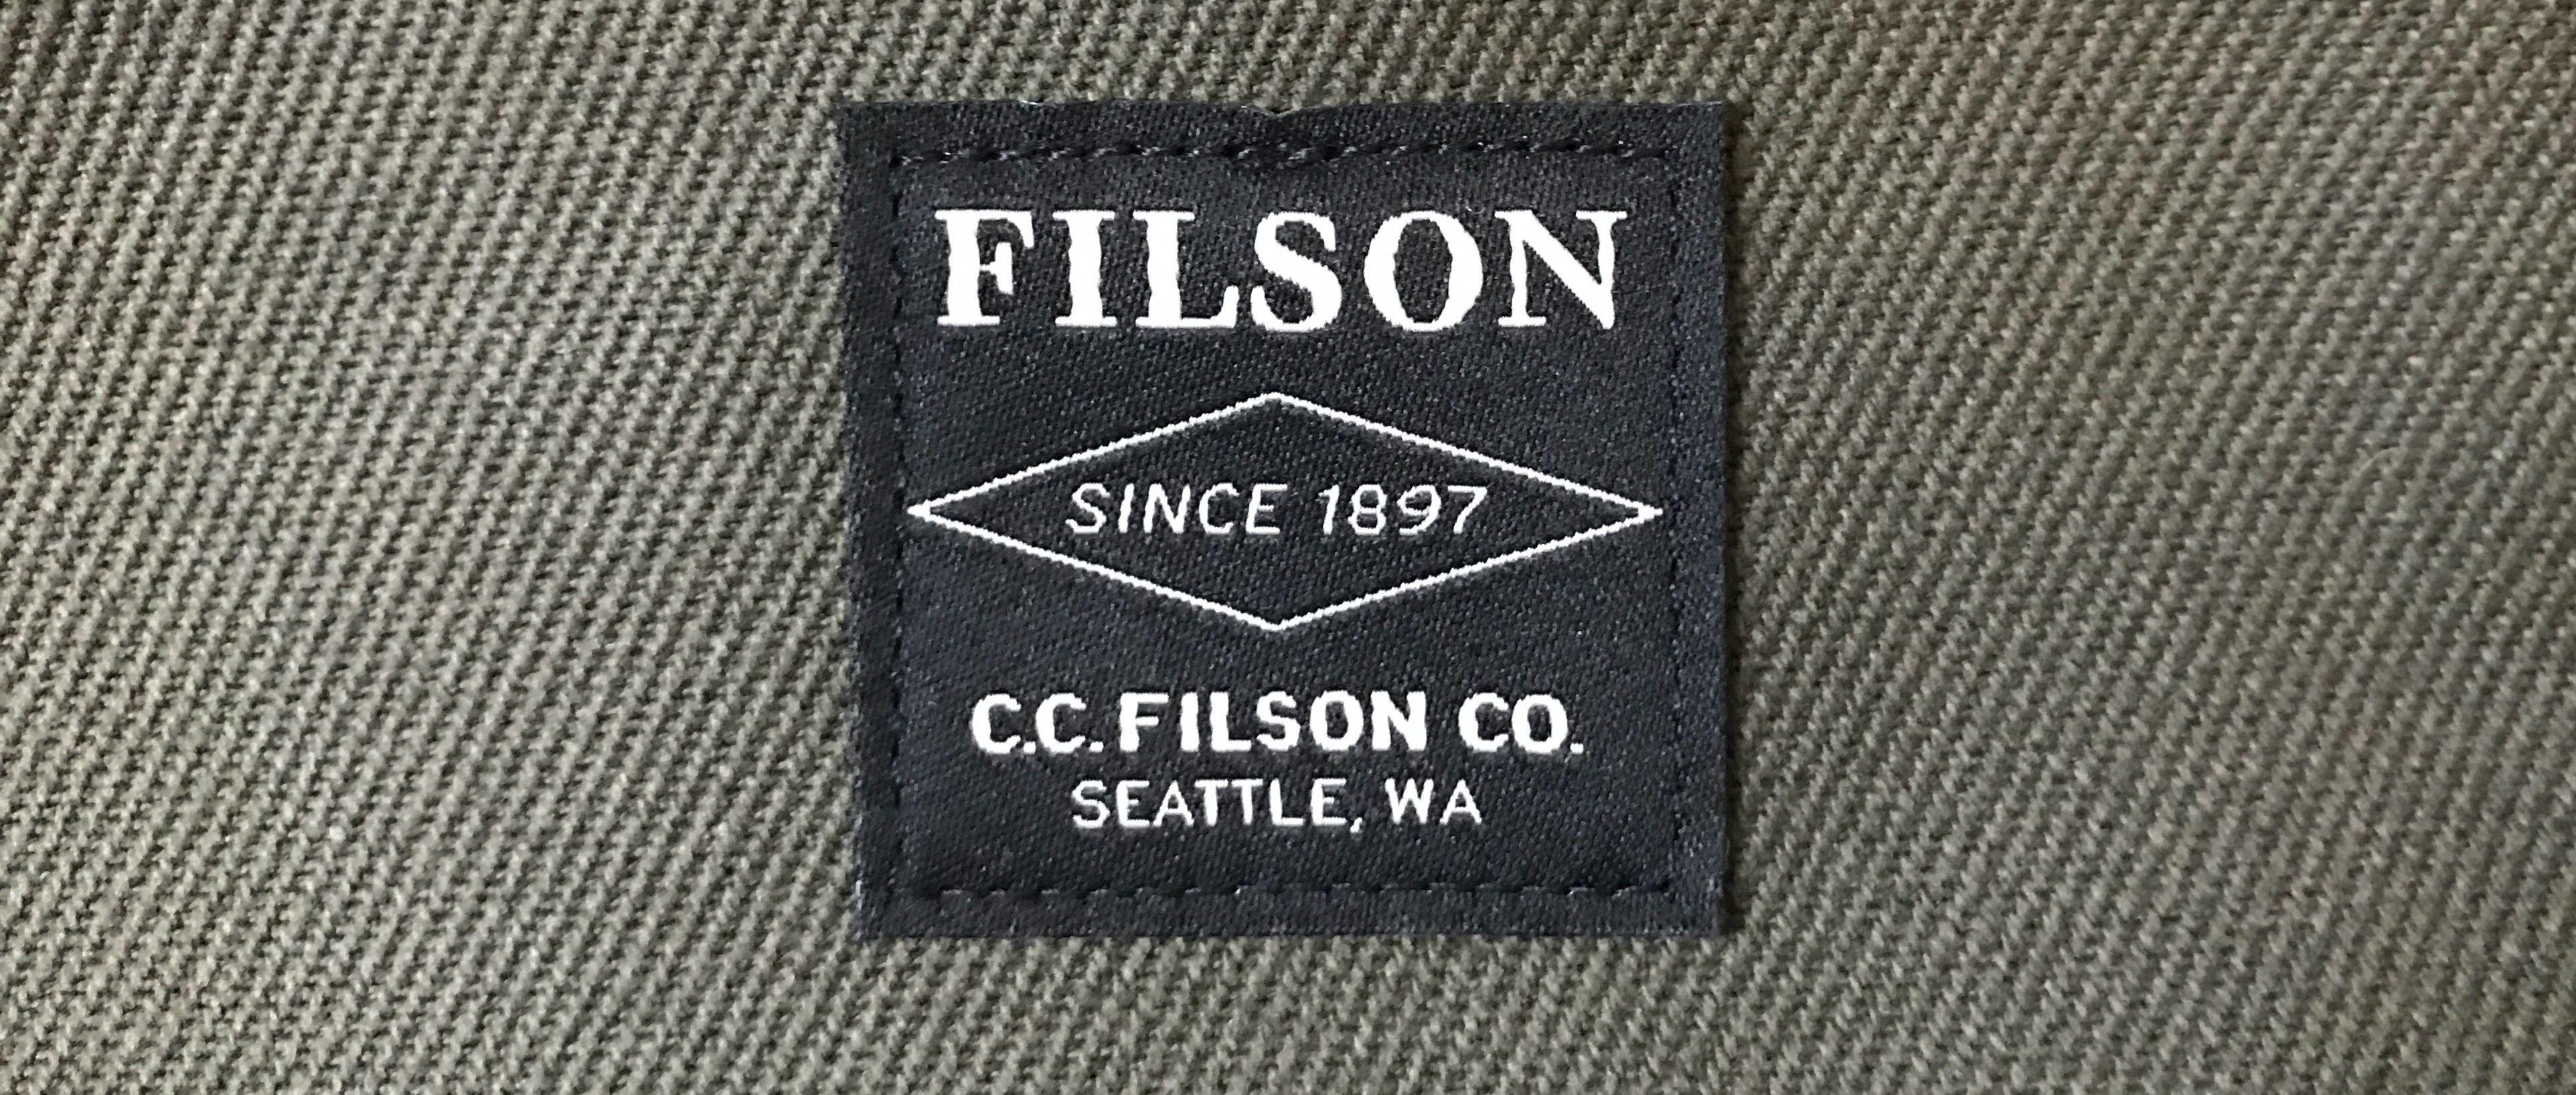 Filson Logo - The Filson Original Briefcase